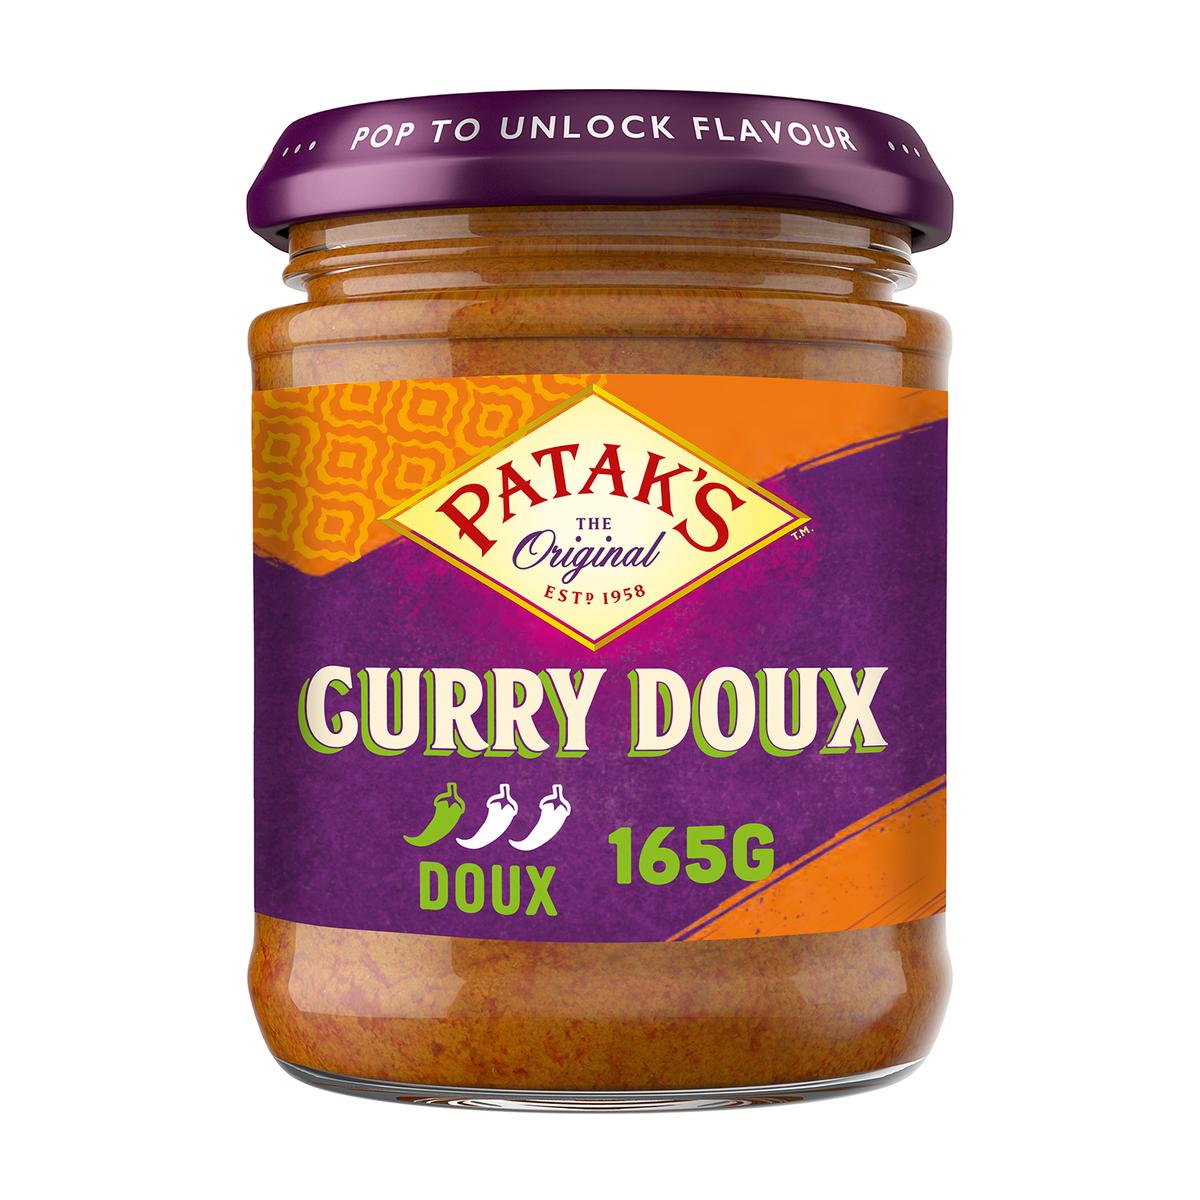 Pate de curry rouge - Le Marché de Mémé